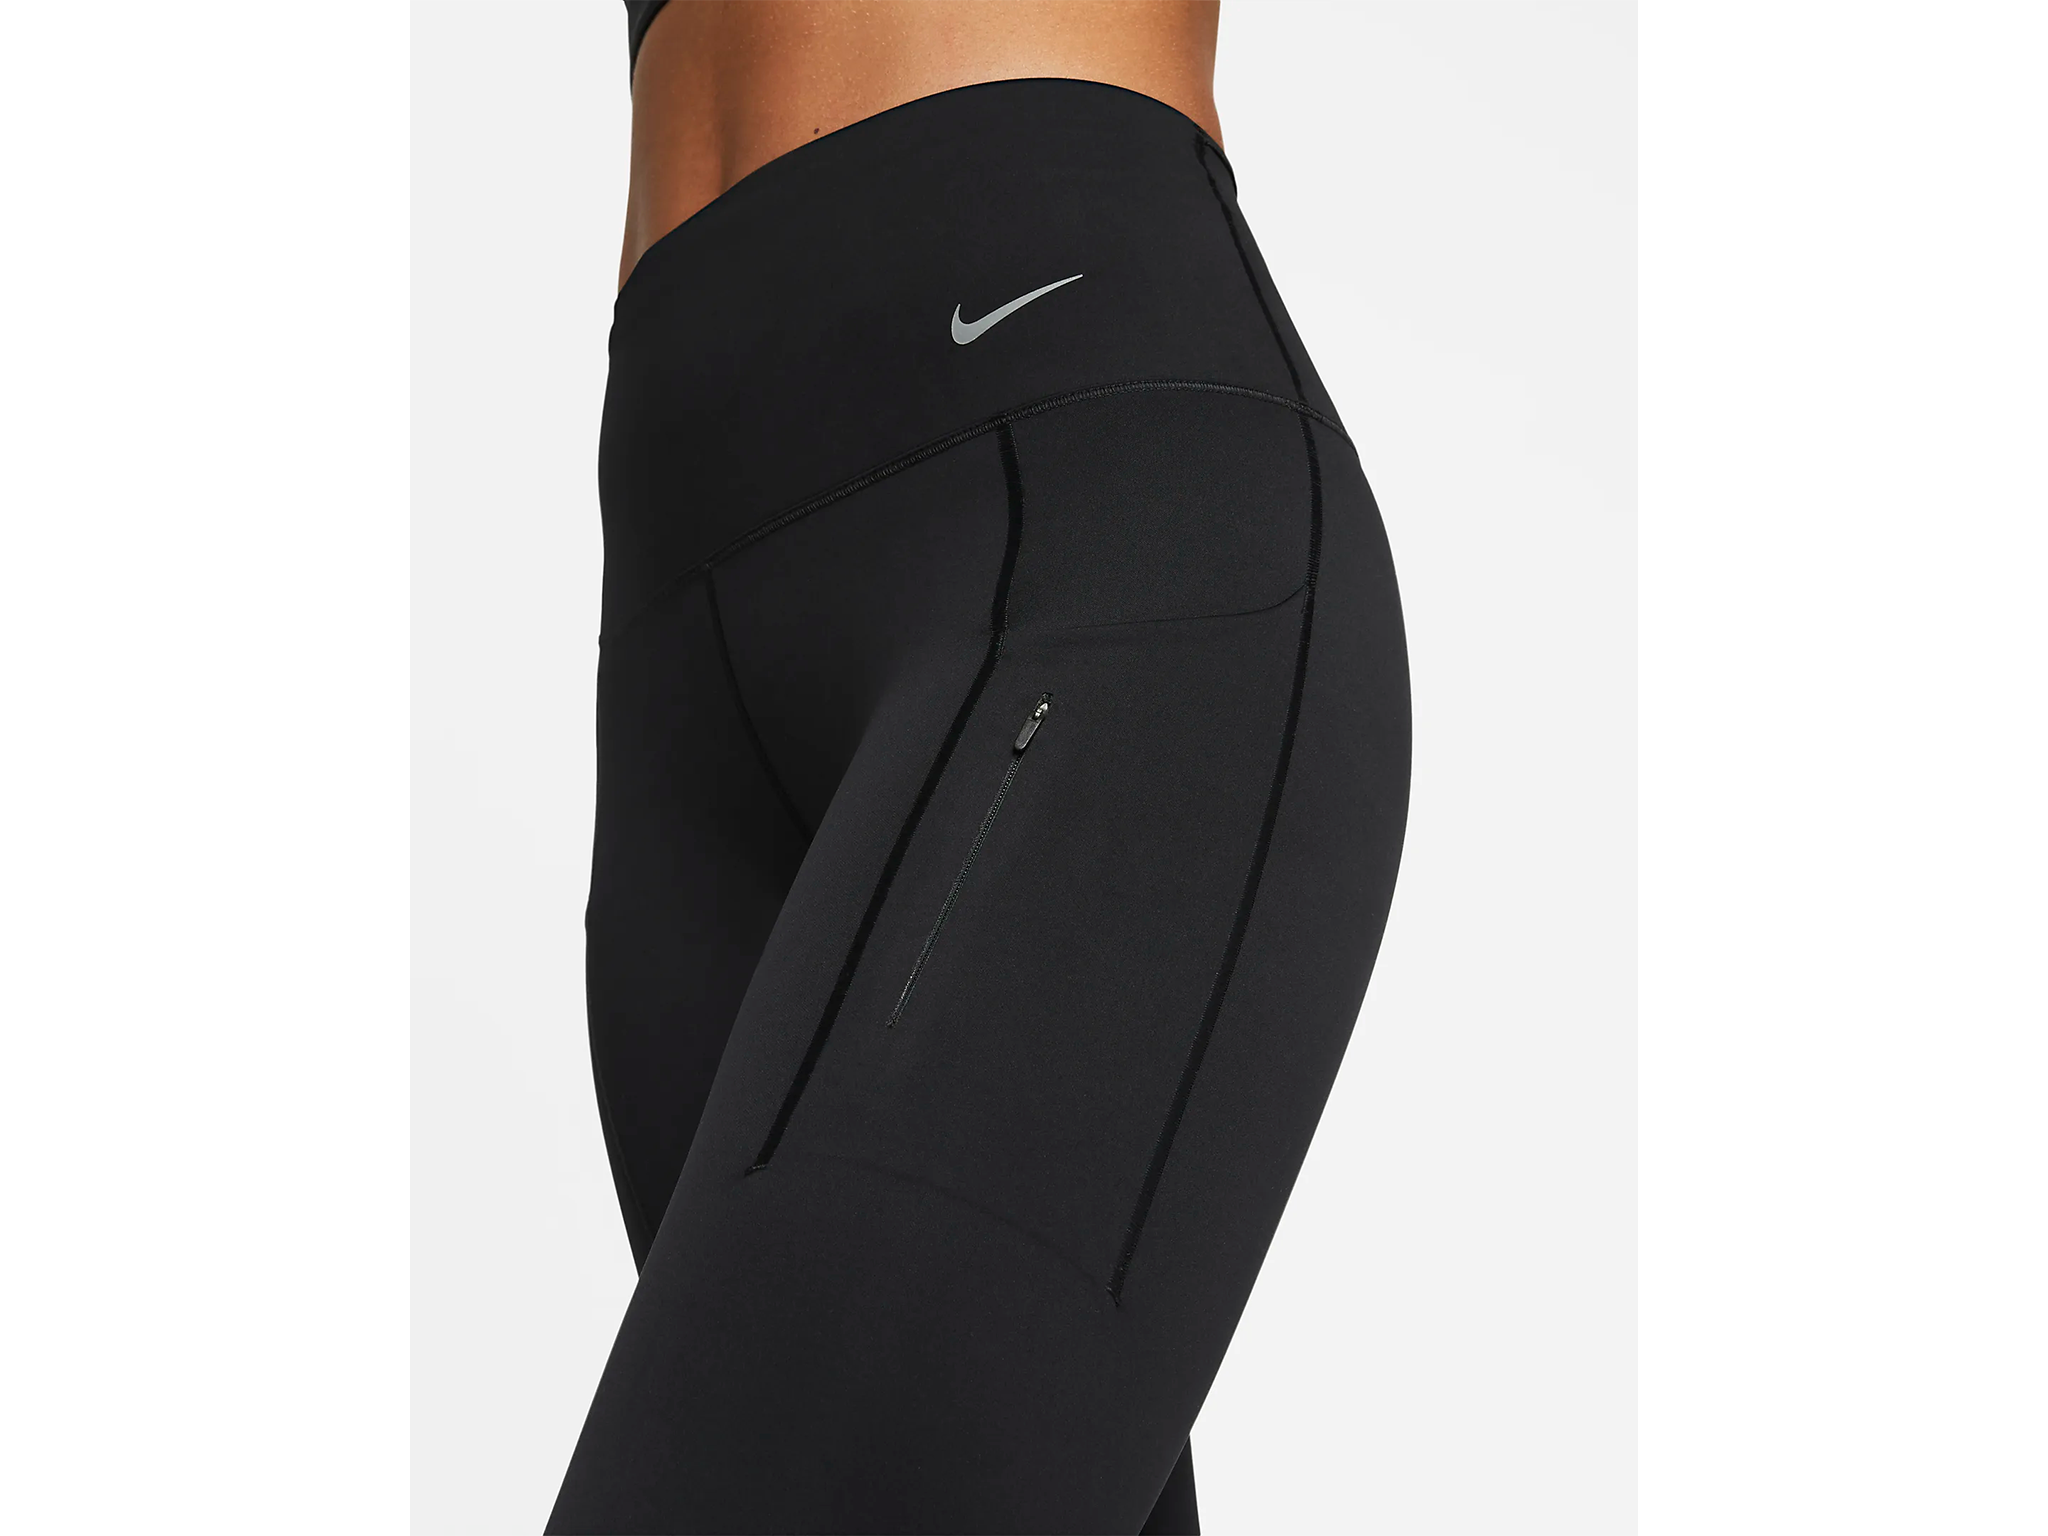 best womens running leggings indybest Nike Go running leggings